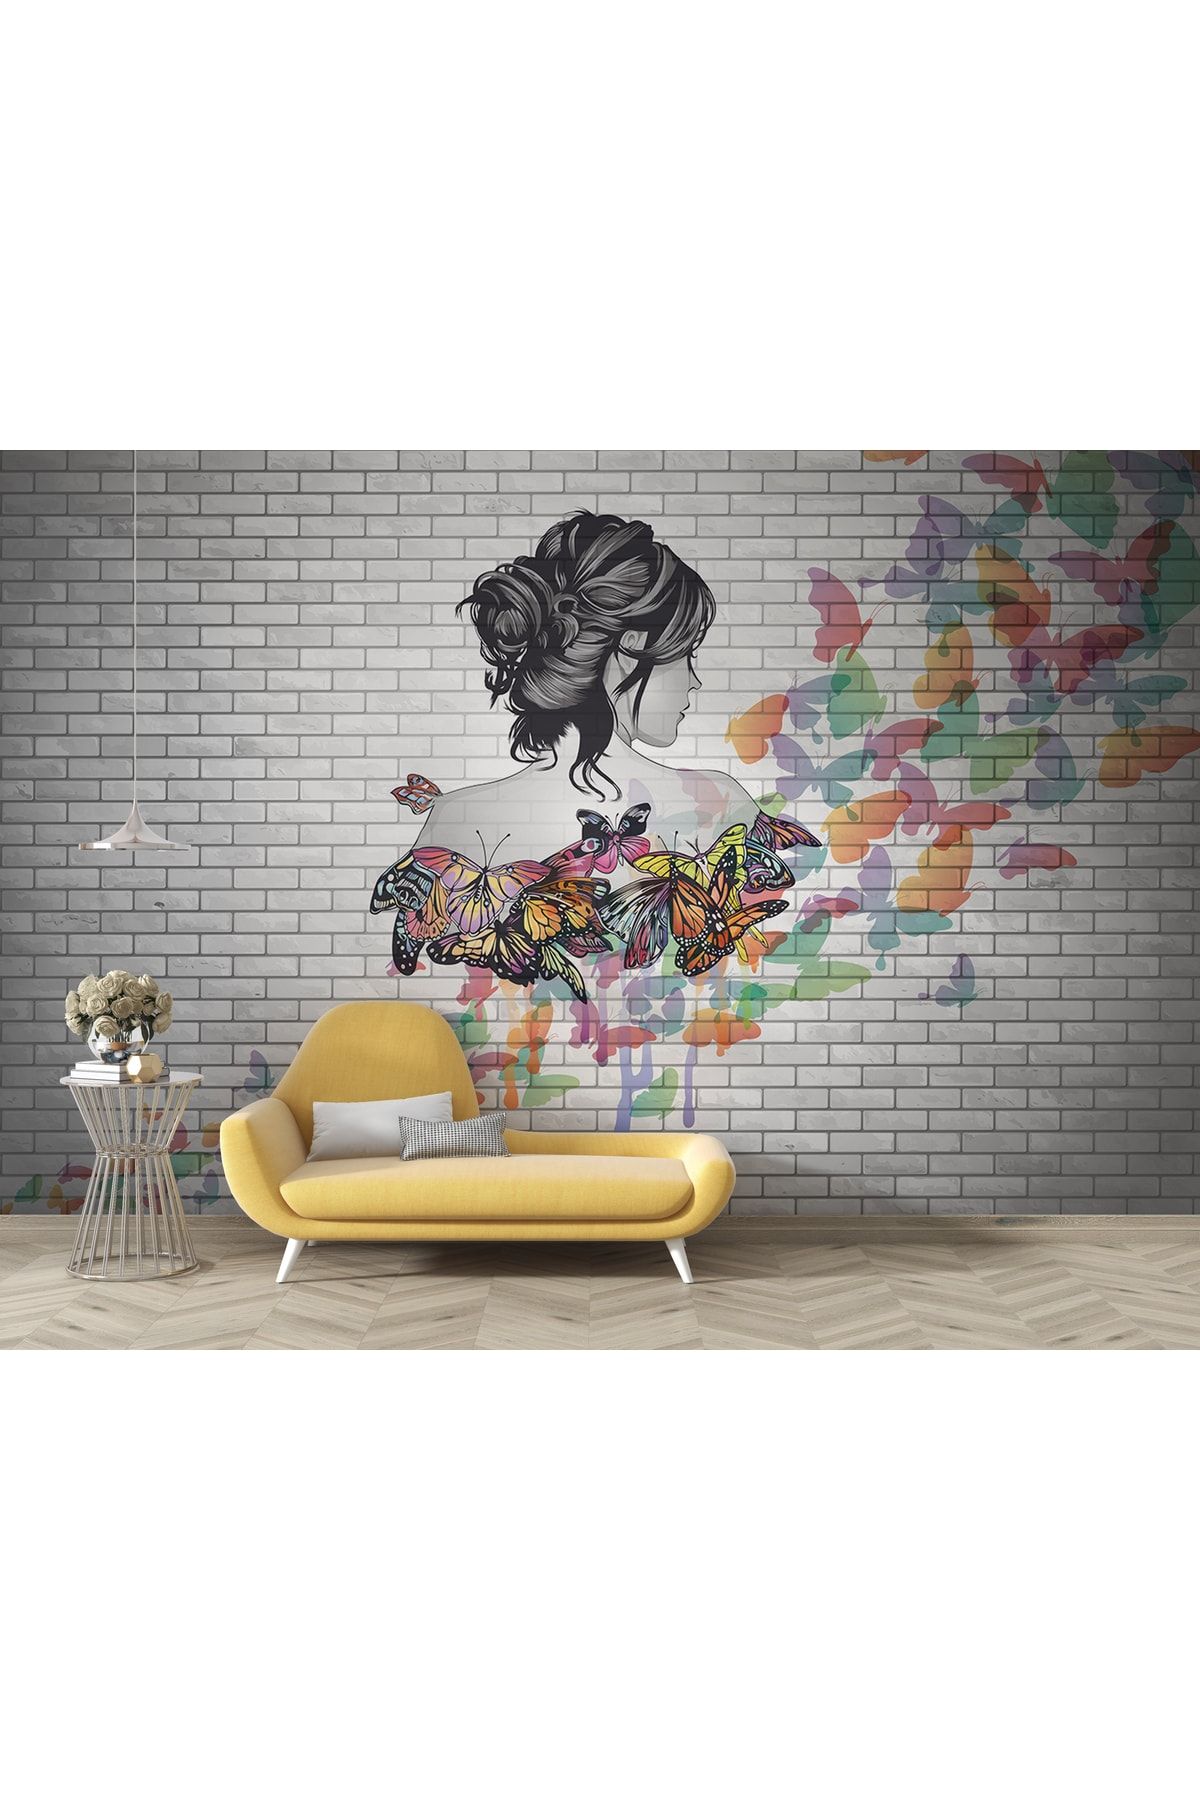 LOTUS AURA Tuğla Duvar Desenli Salon Duvar Kağıdı, Renkli Kelebekli Genç Odası Duvar Posteri